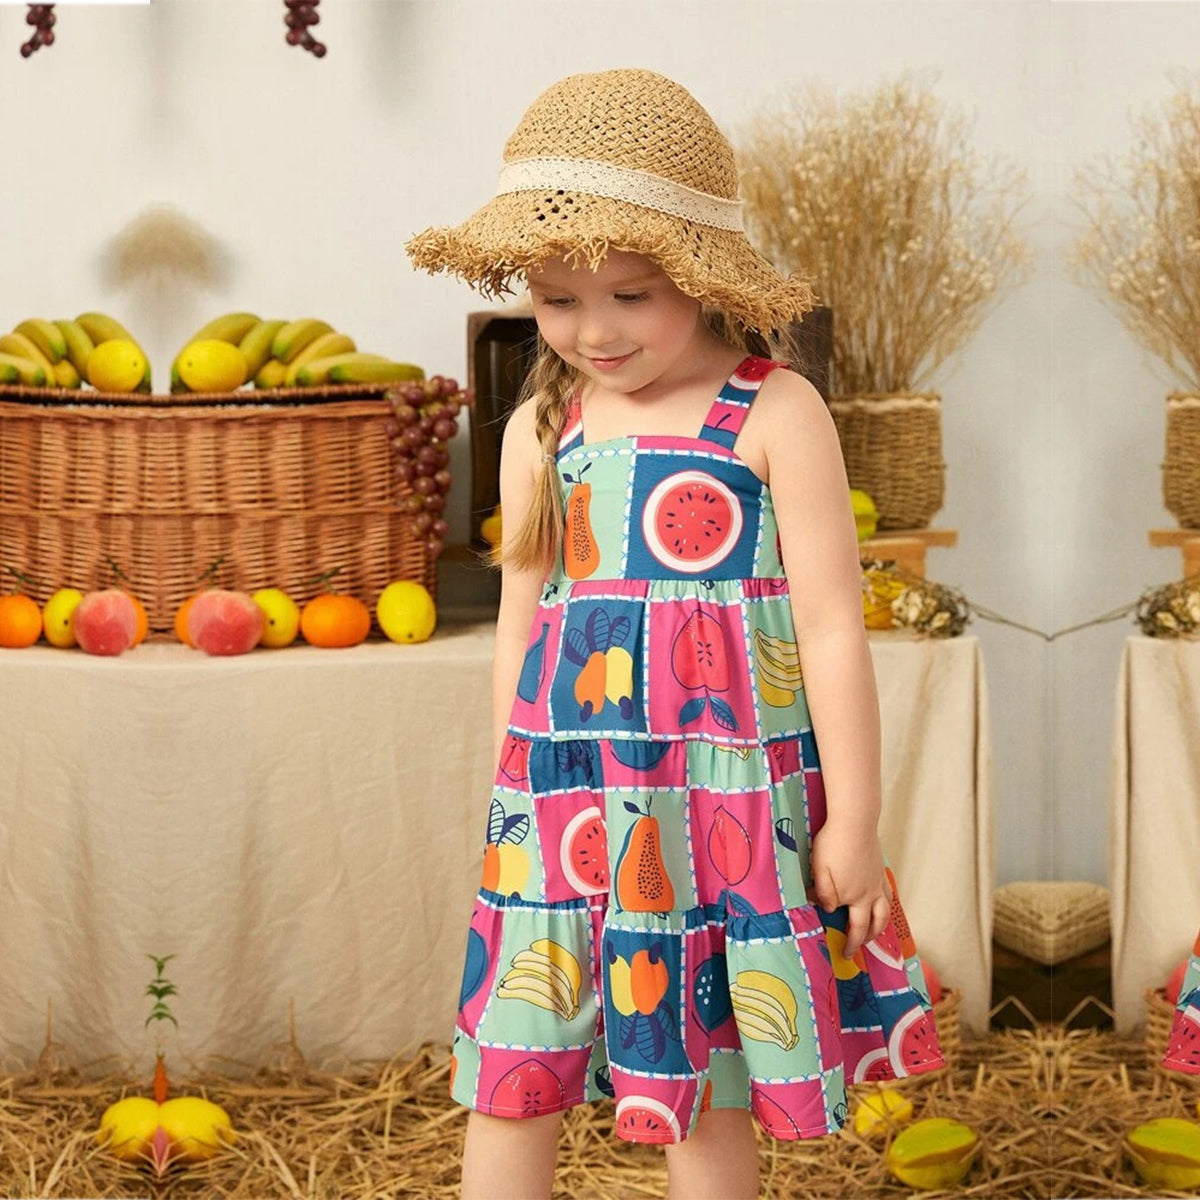 Baby Girl's Stylish Designer Black White Dot's & Fruits Dress (Combo Pack Of 2) for Baby Girls.